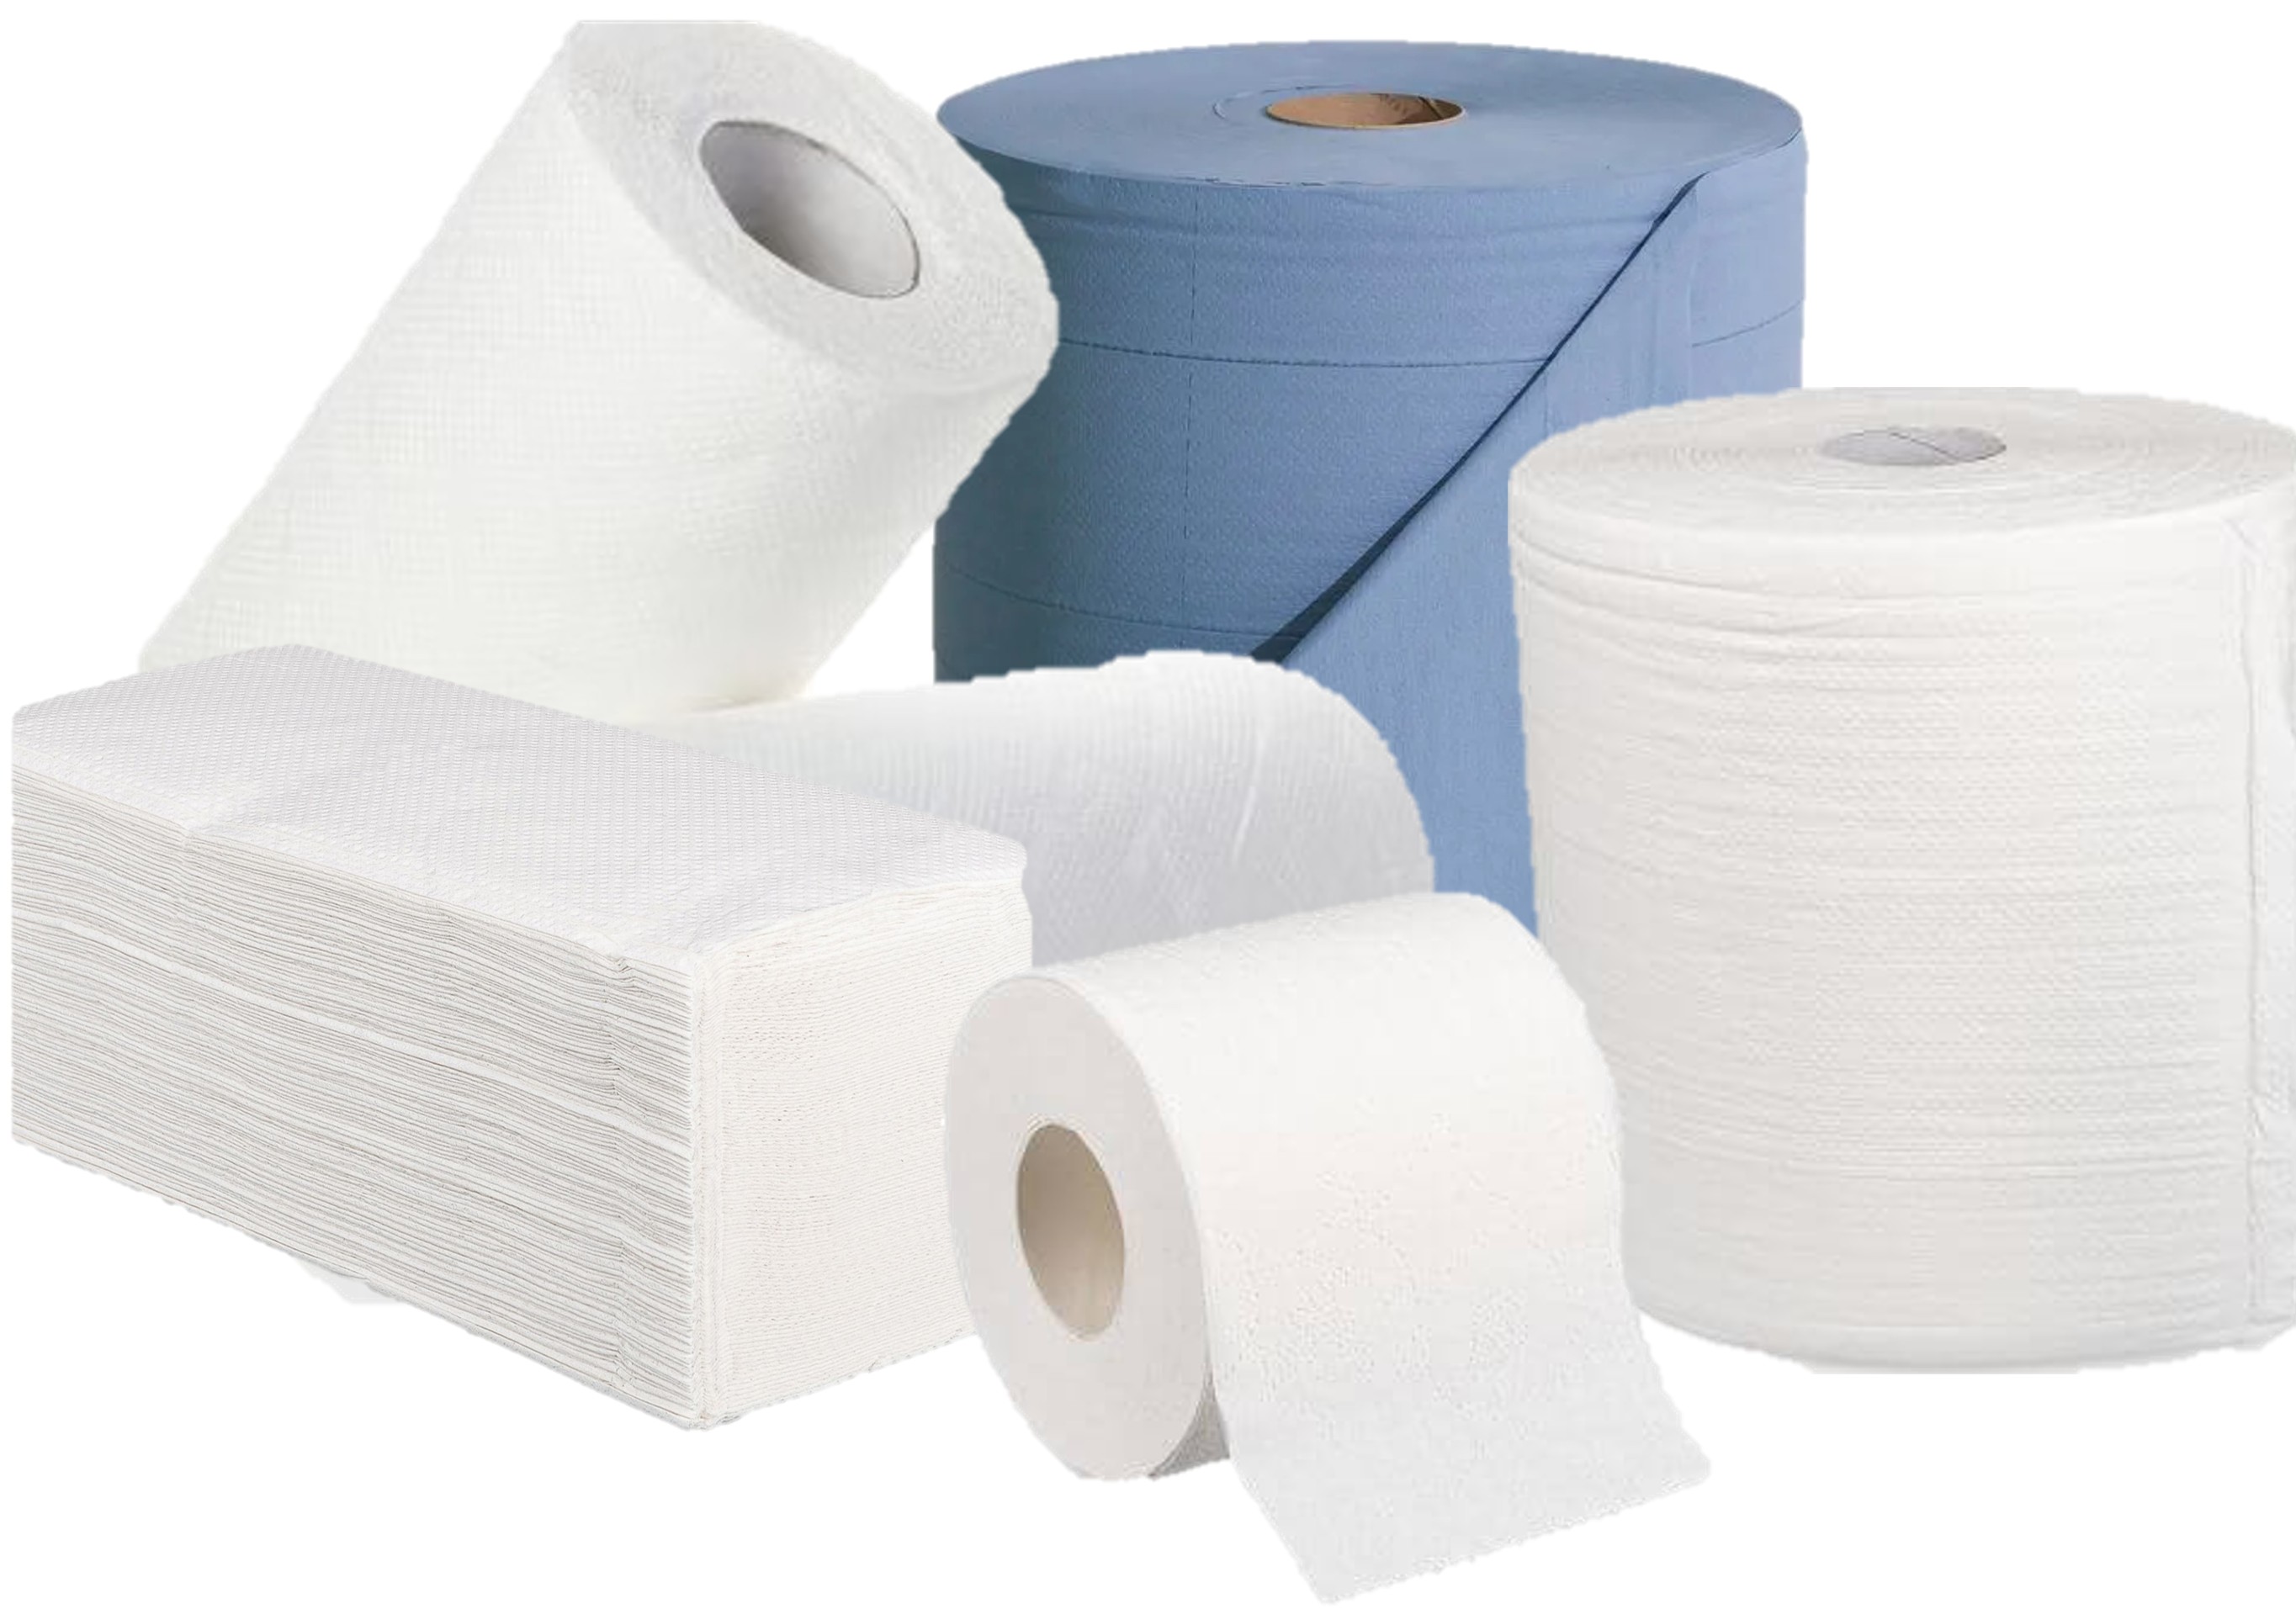 Niedrige Preise - Große Auswahl bei Handtuchpapier, Toilettenpapier und Reinigungsrollen für alle Anwendungsbereiche